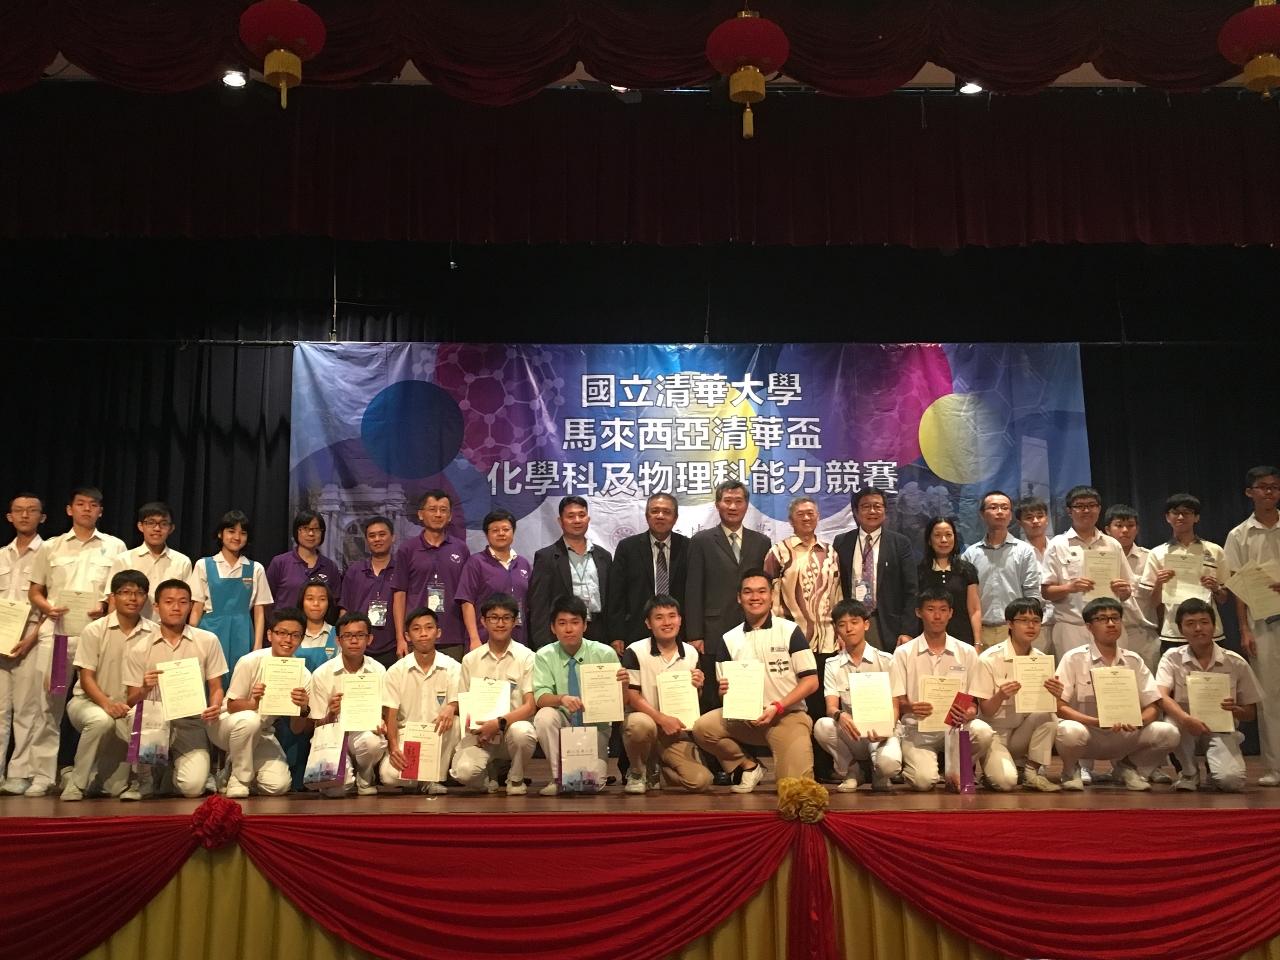 尹公使新垣（第2排右10）出席「2018馬來西亞清華盃化學科及物理科能力競賽」暨清大之夜活動與貴賓及獲獎同學合影。 
